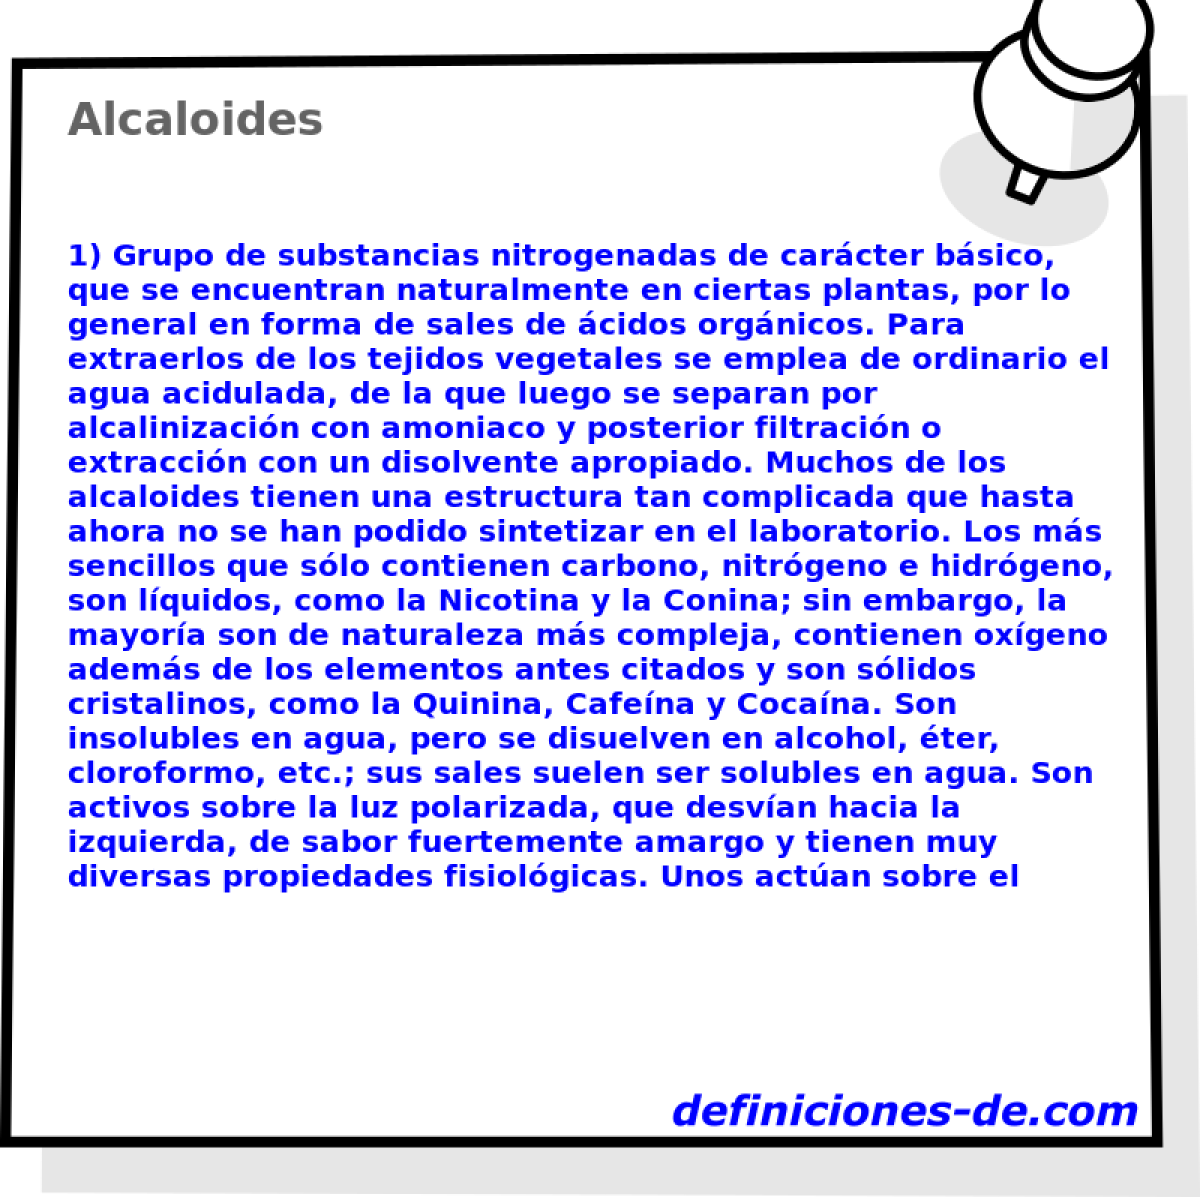 Alcaloides 